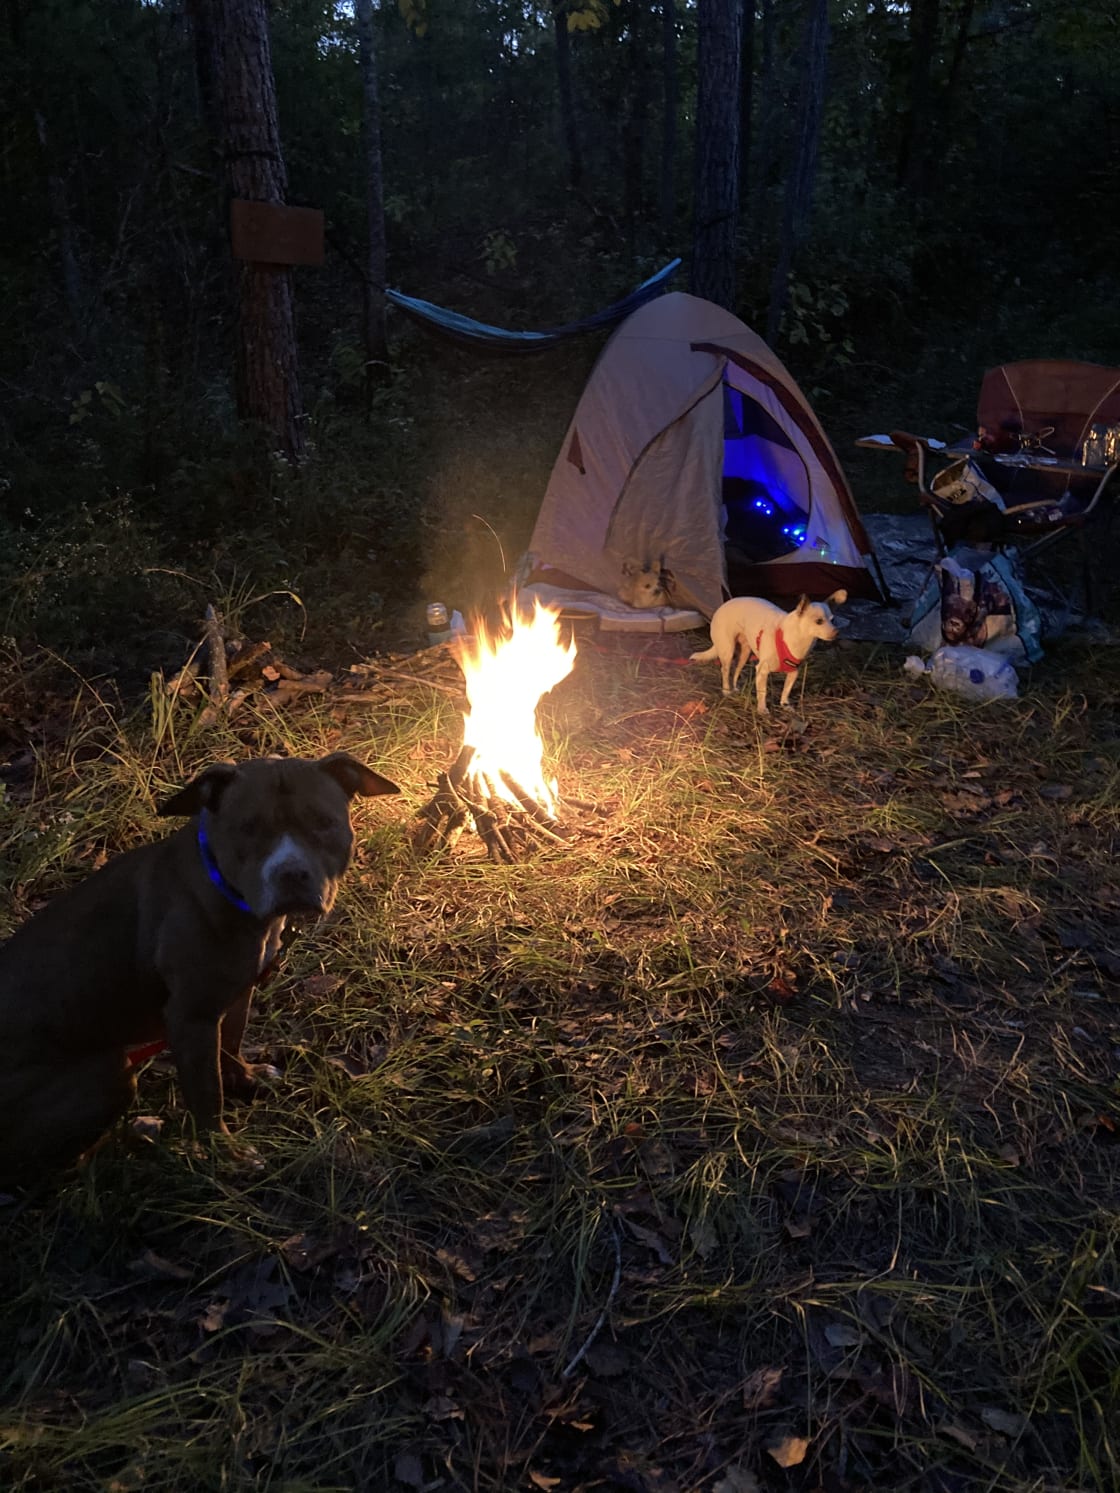 Murchison Farm's Primitive Camping